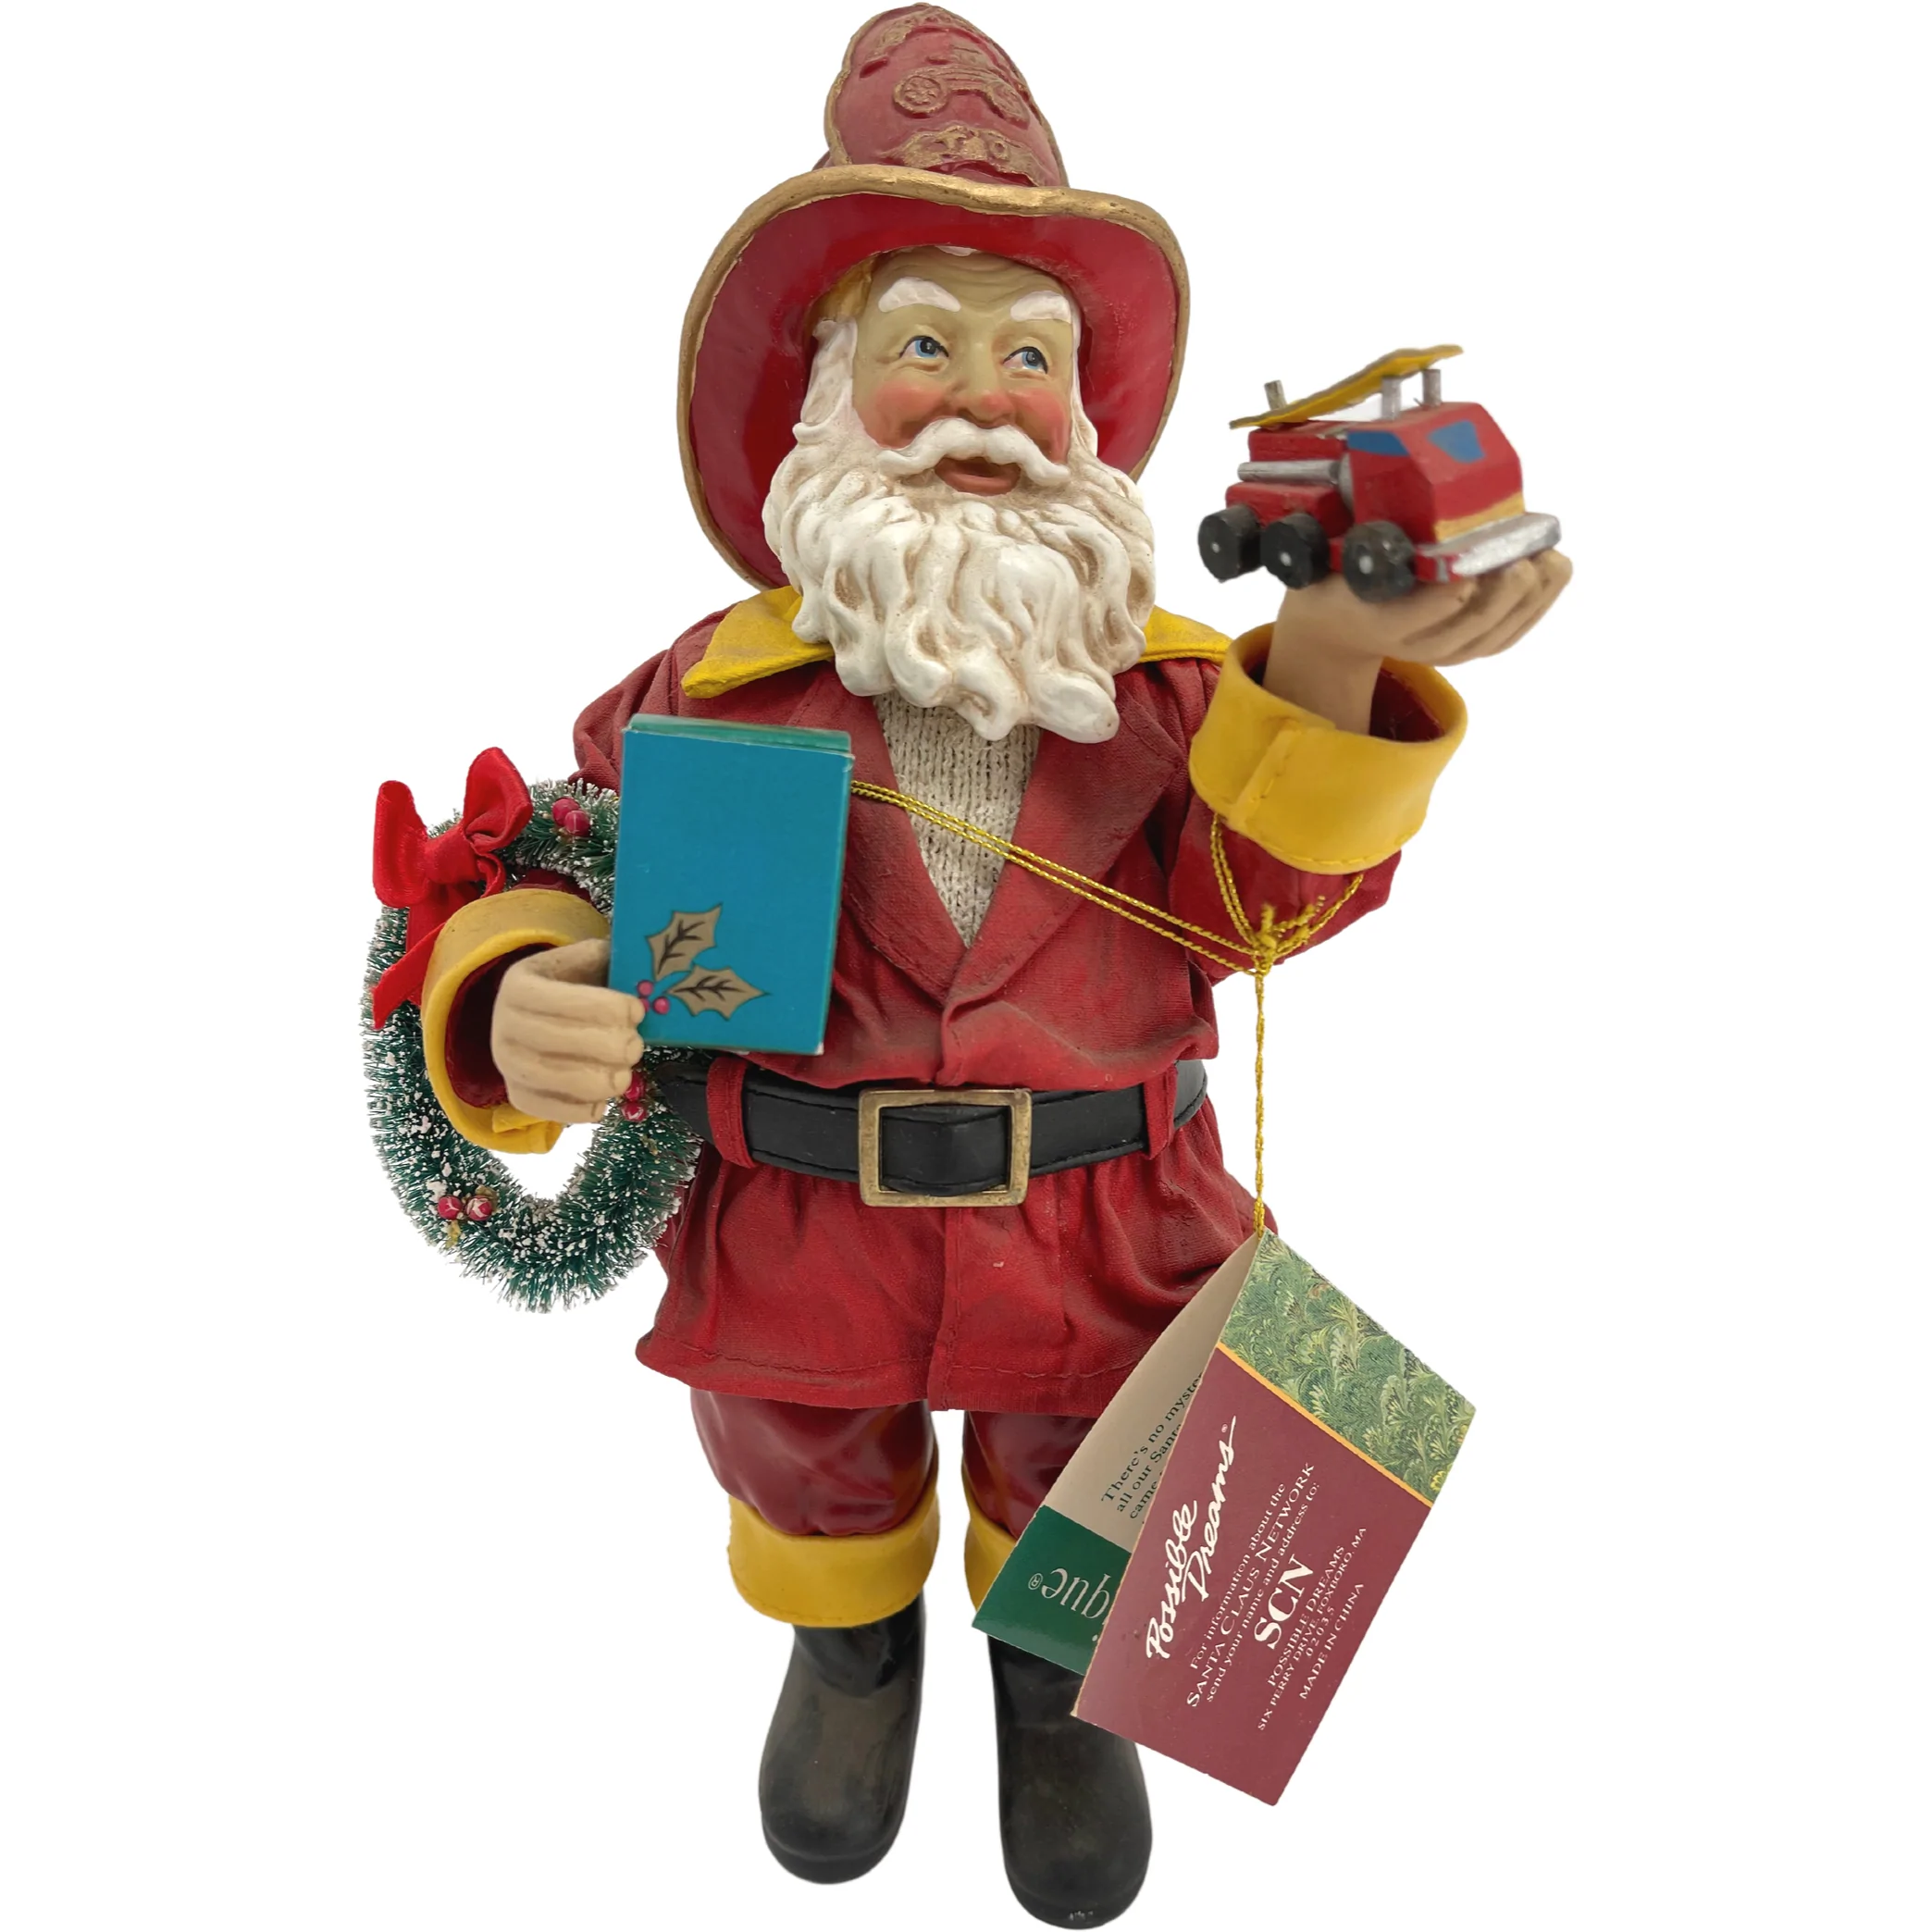 Possible Dreams Santa Claus Decor Piece / Fireman Santa Claus / Holiday Decor **DEALS**